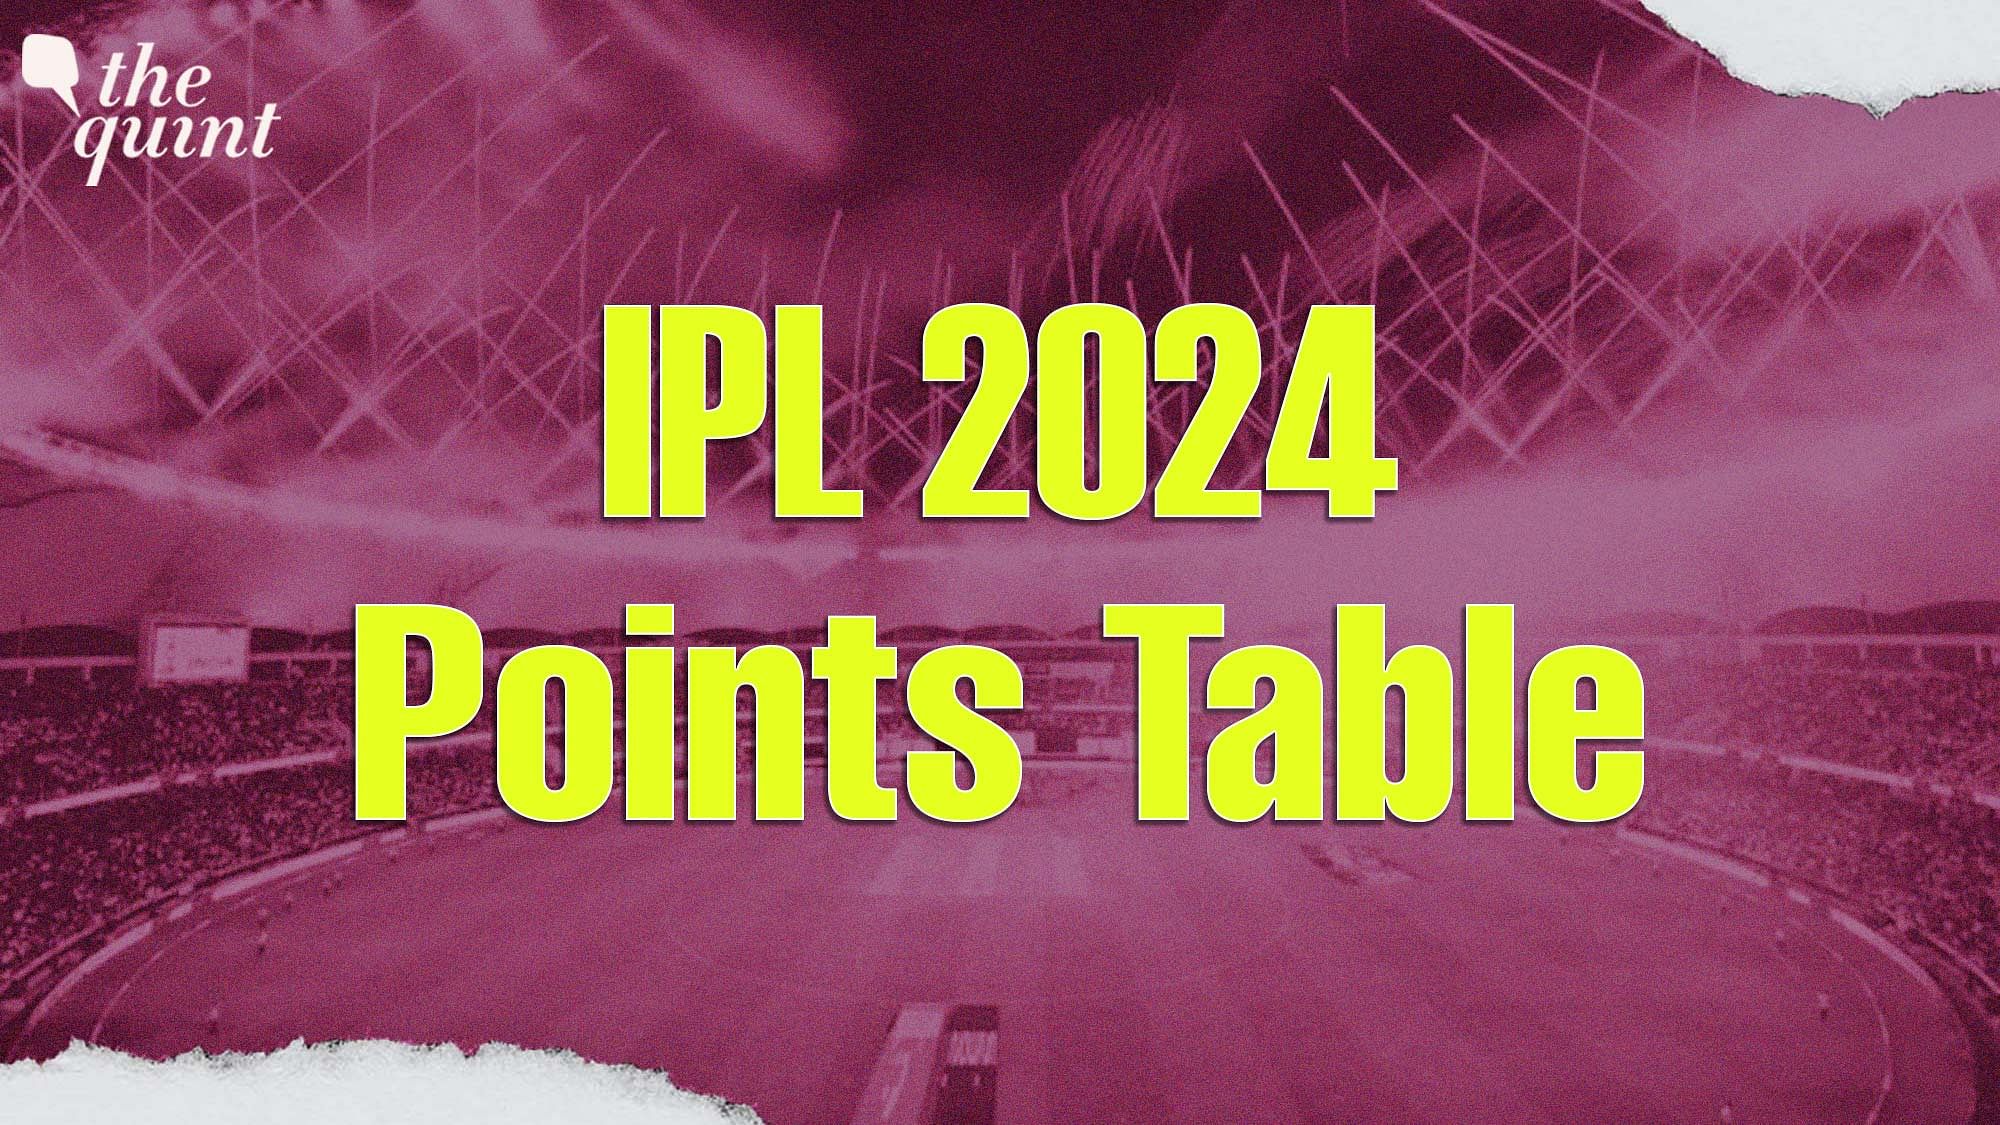 <div class="paragraphs"><p>IPL 2024 Points Table</p></div>